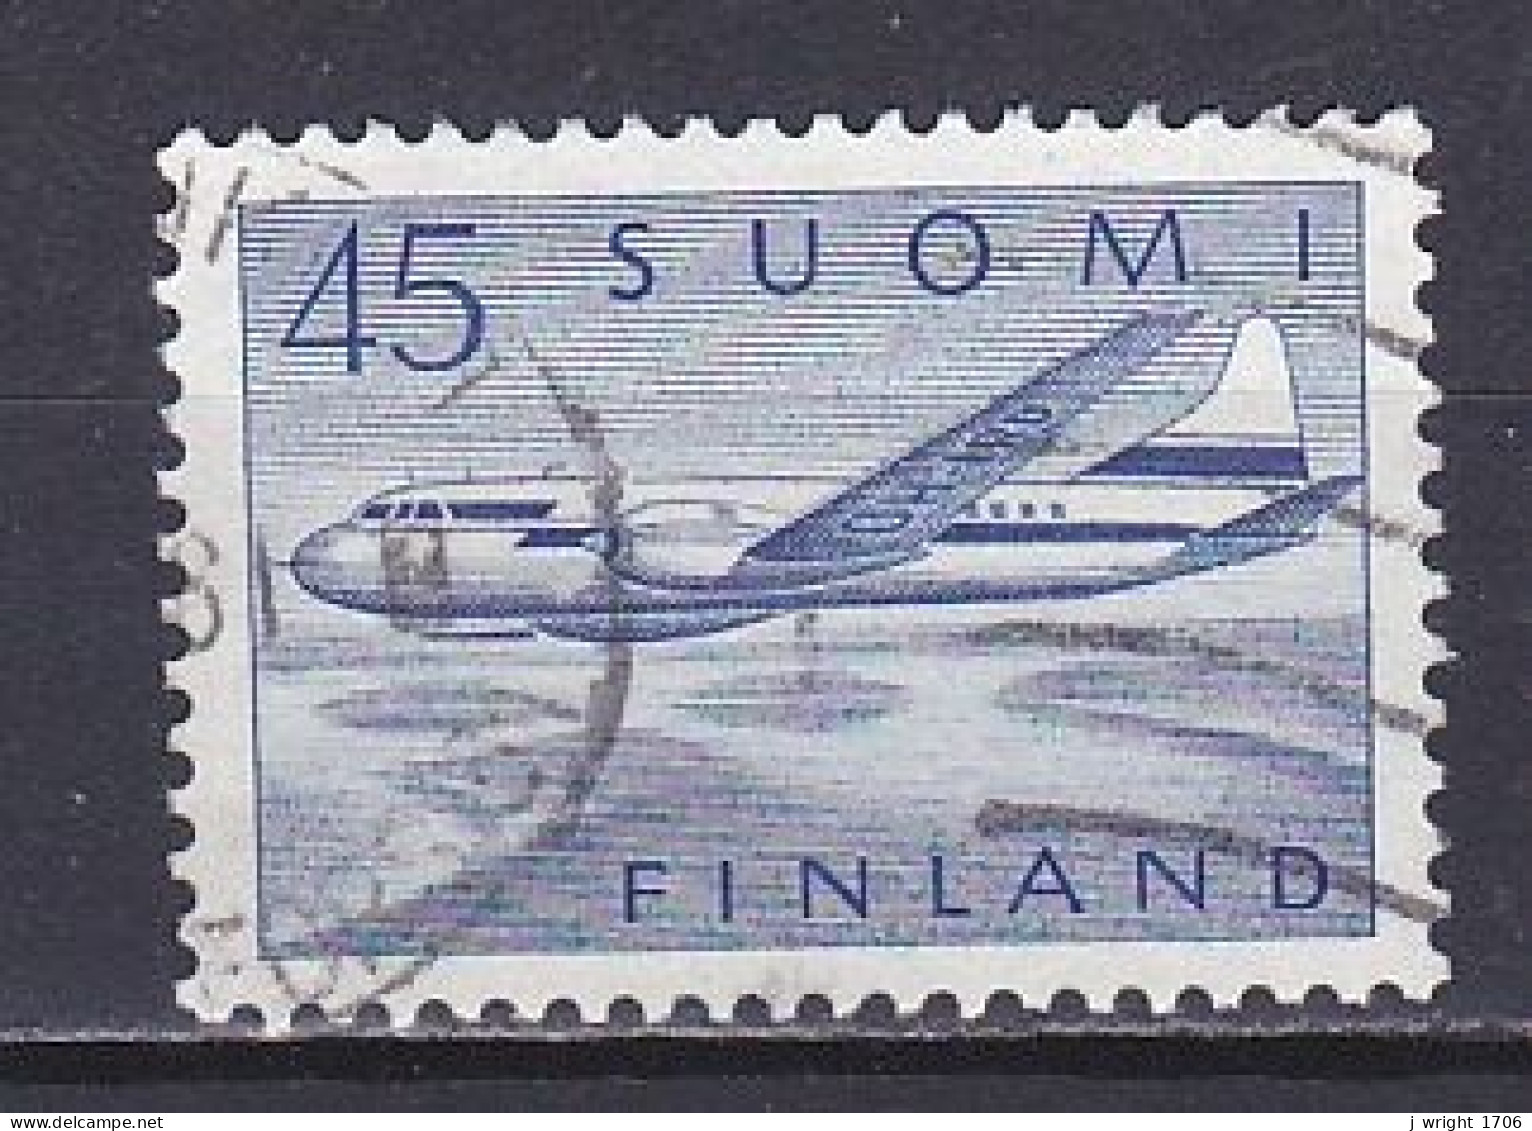 Finland, 1959, Convair 440, 45mk, USED - Gebruikt